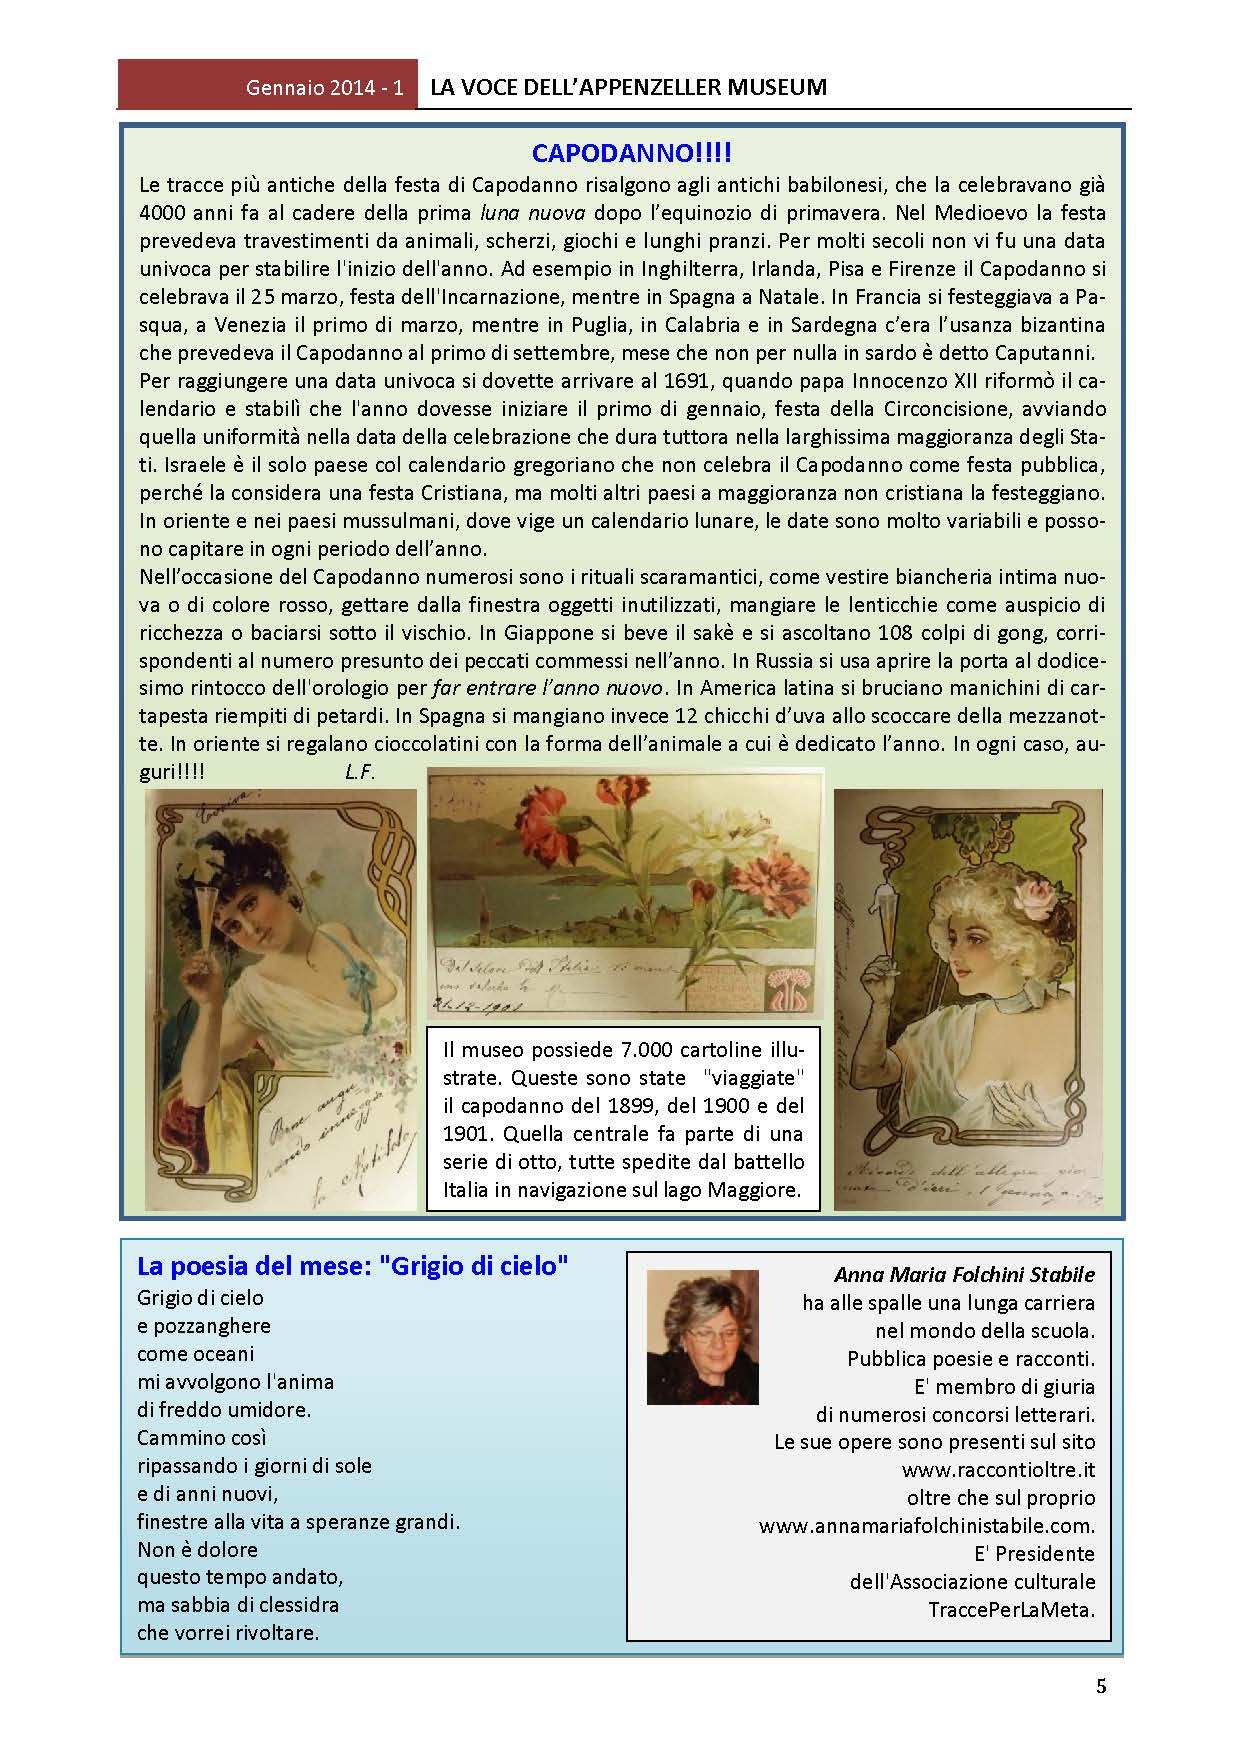 Gennaio 2014, n.1, La Voce dell’Appenzeller Museum – Anna Maria Folchini Stabile, Poeta del mese